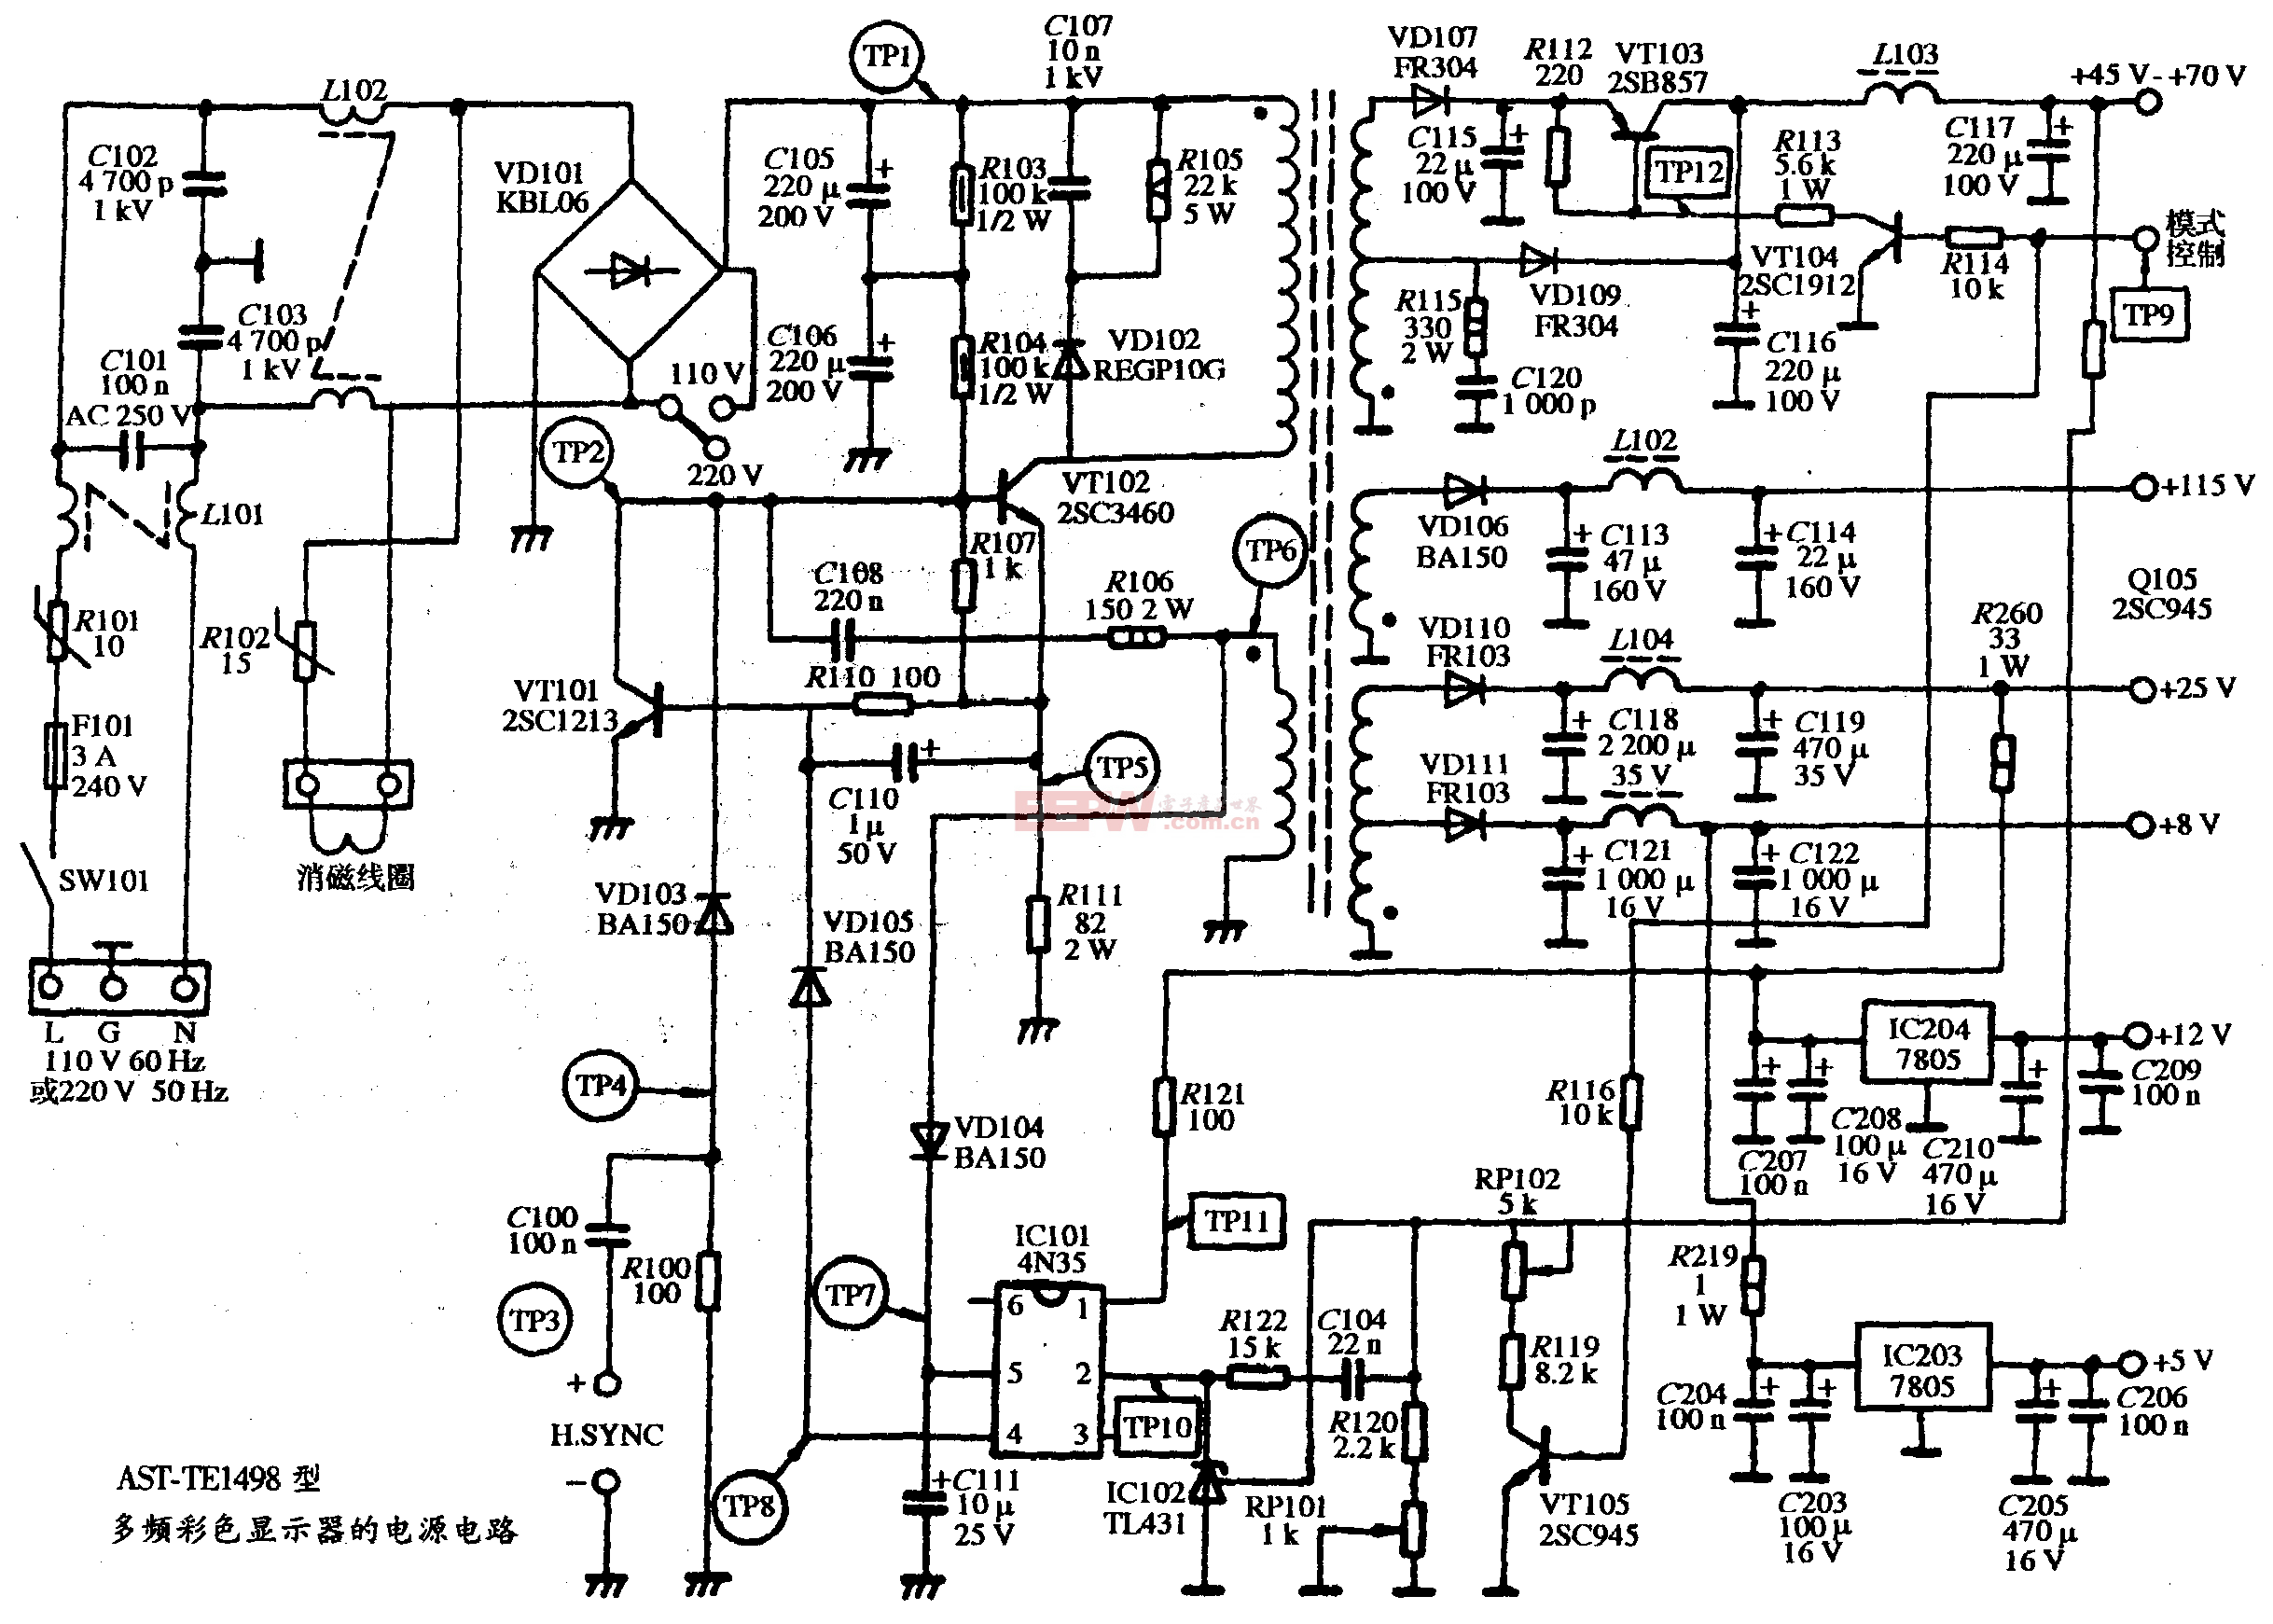 18、AST-TE1498型多频彩色显示器的电源电路图